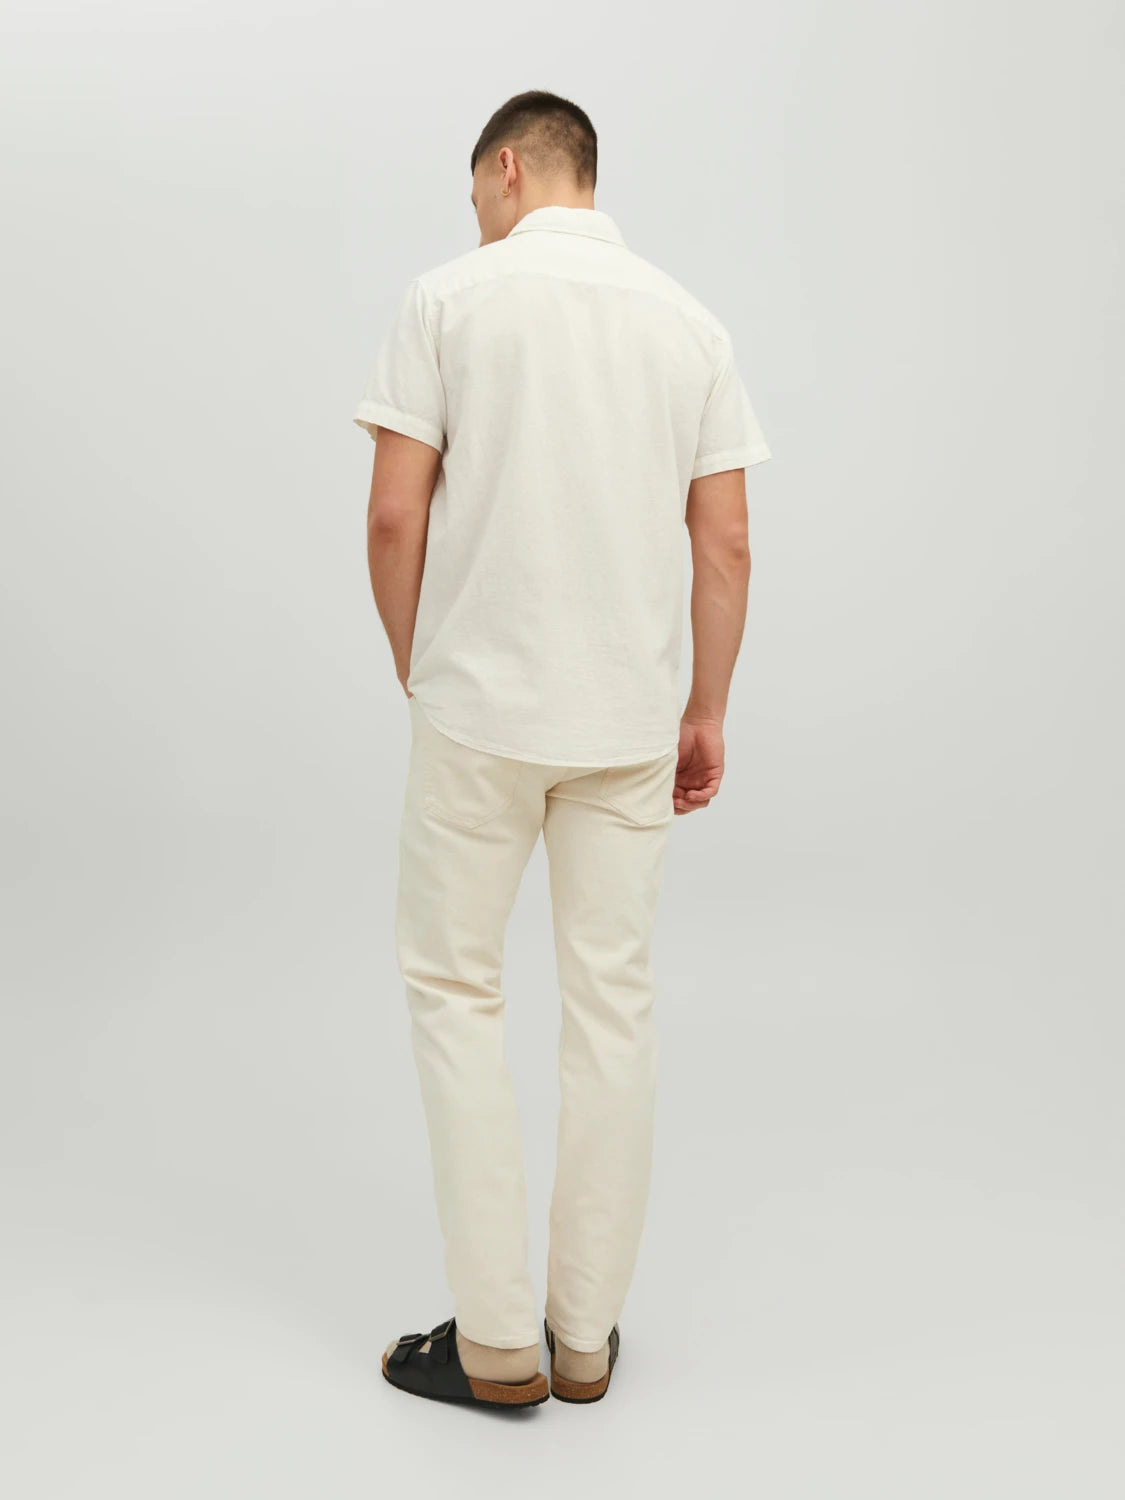 Linen Shirt Short Sleeves White